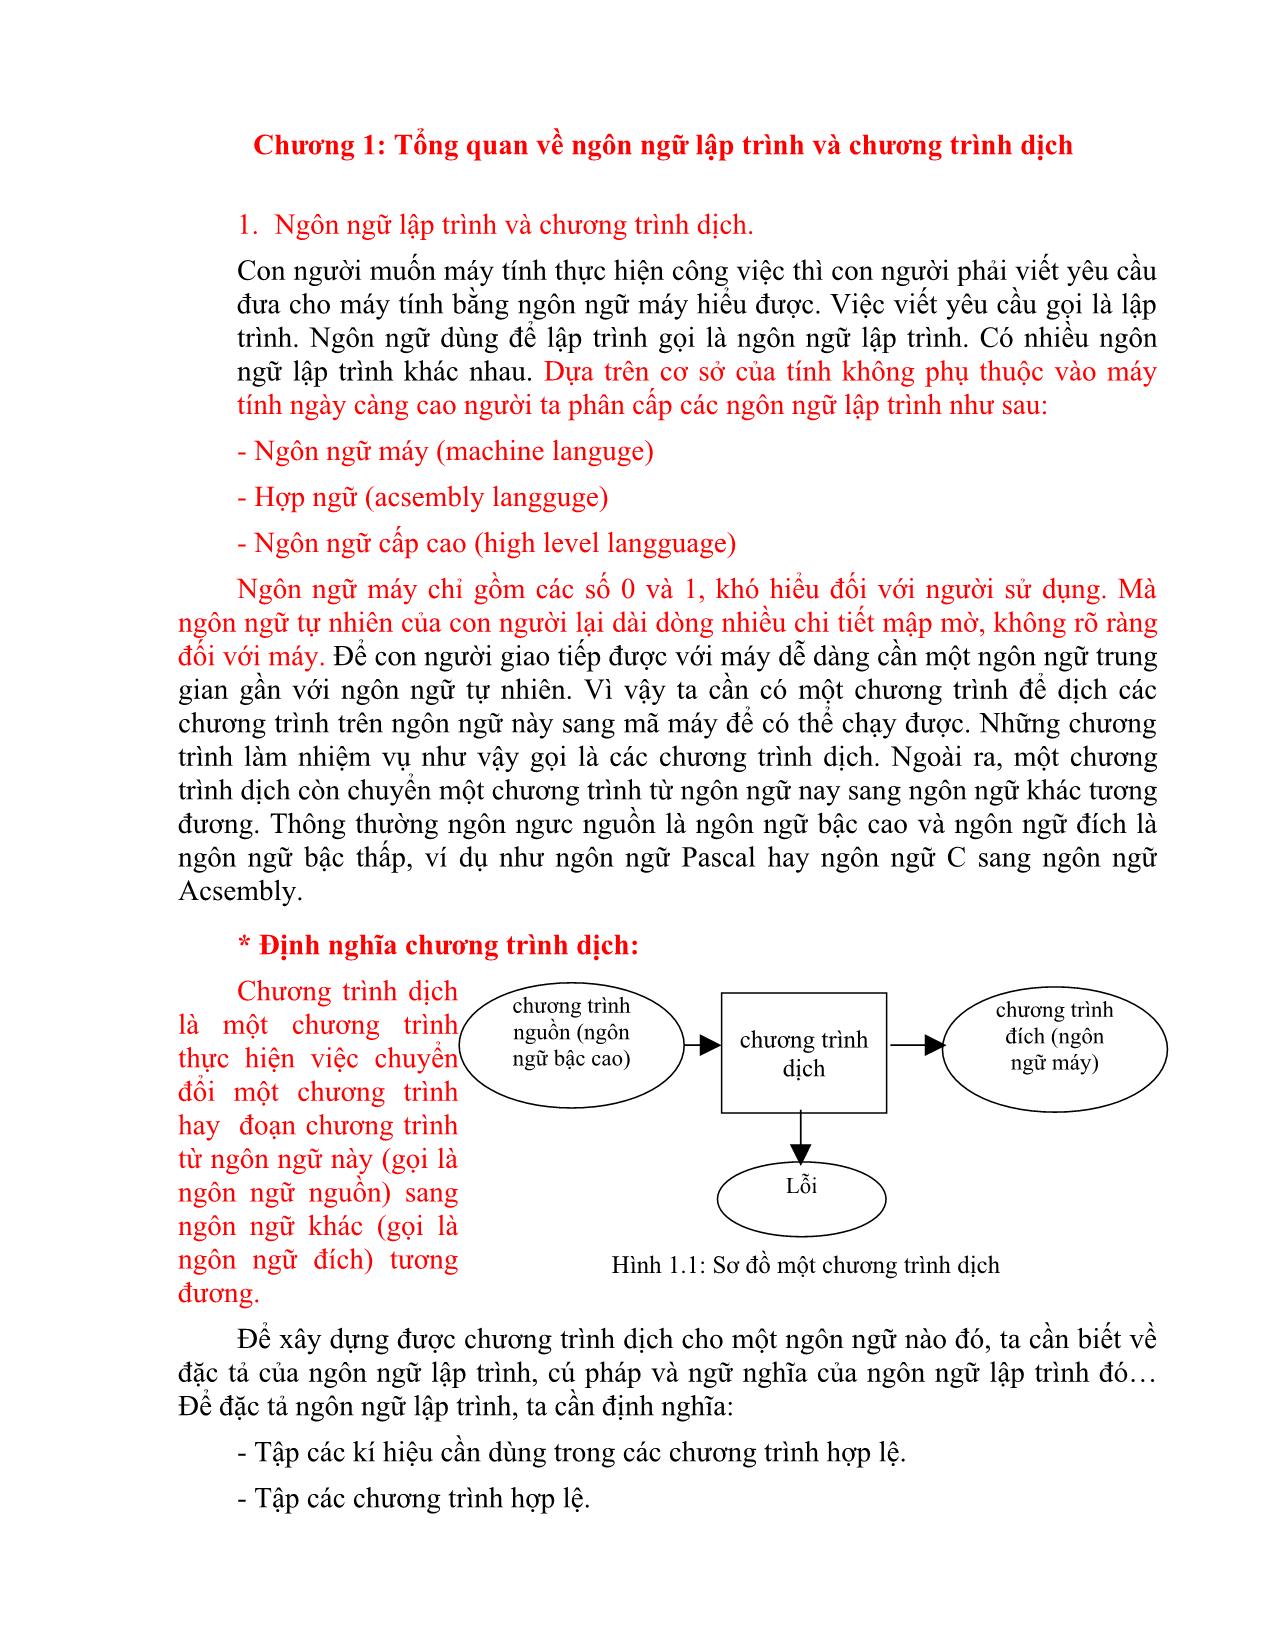 Giáo trình môn Chương trình dịch (Phần 1) trang 5